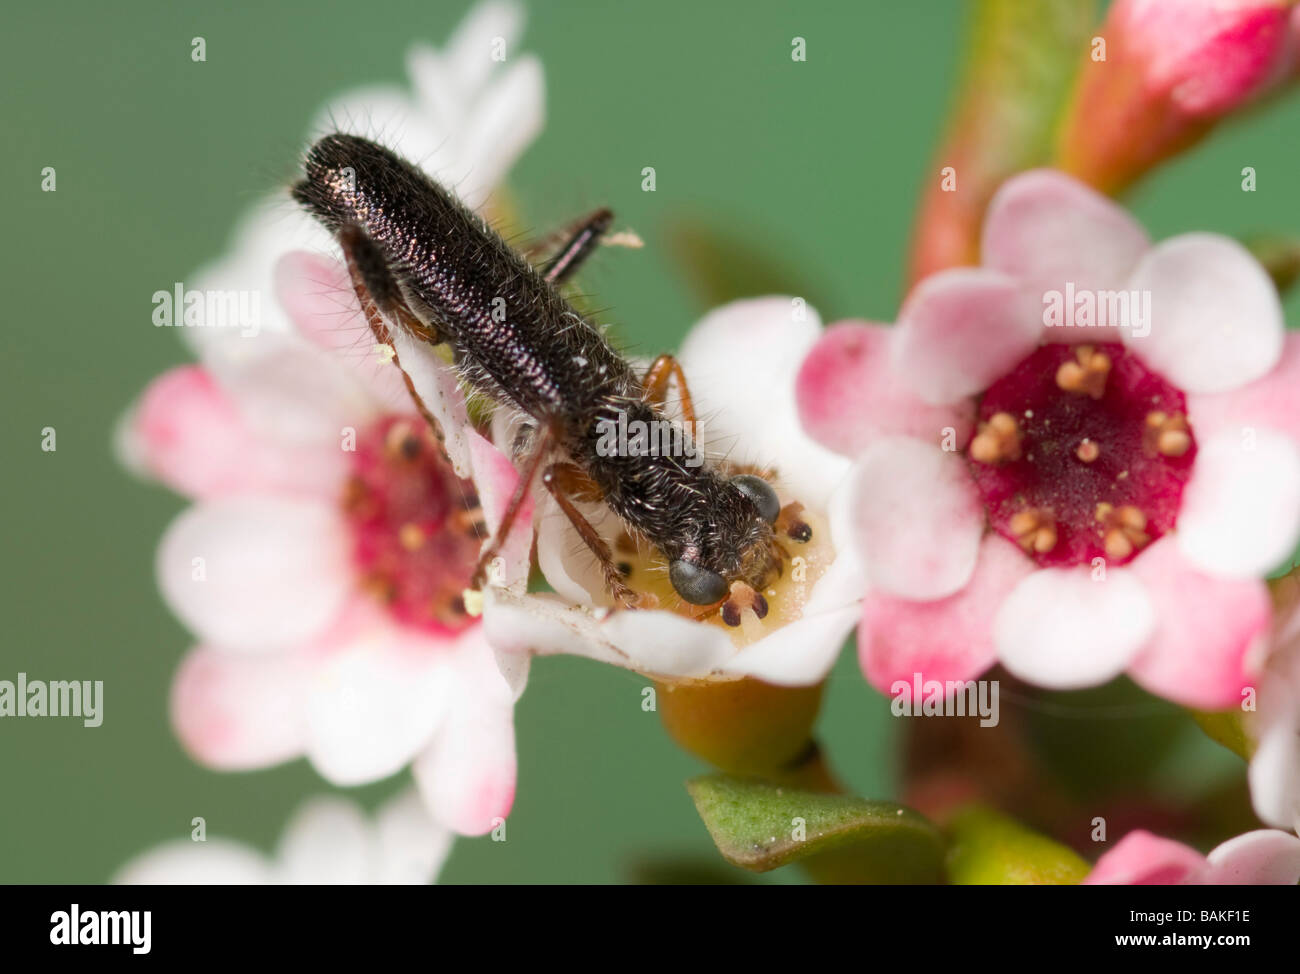 Clerid beetle on thryptomene flowers Stock Photo